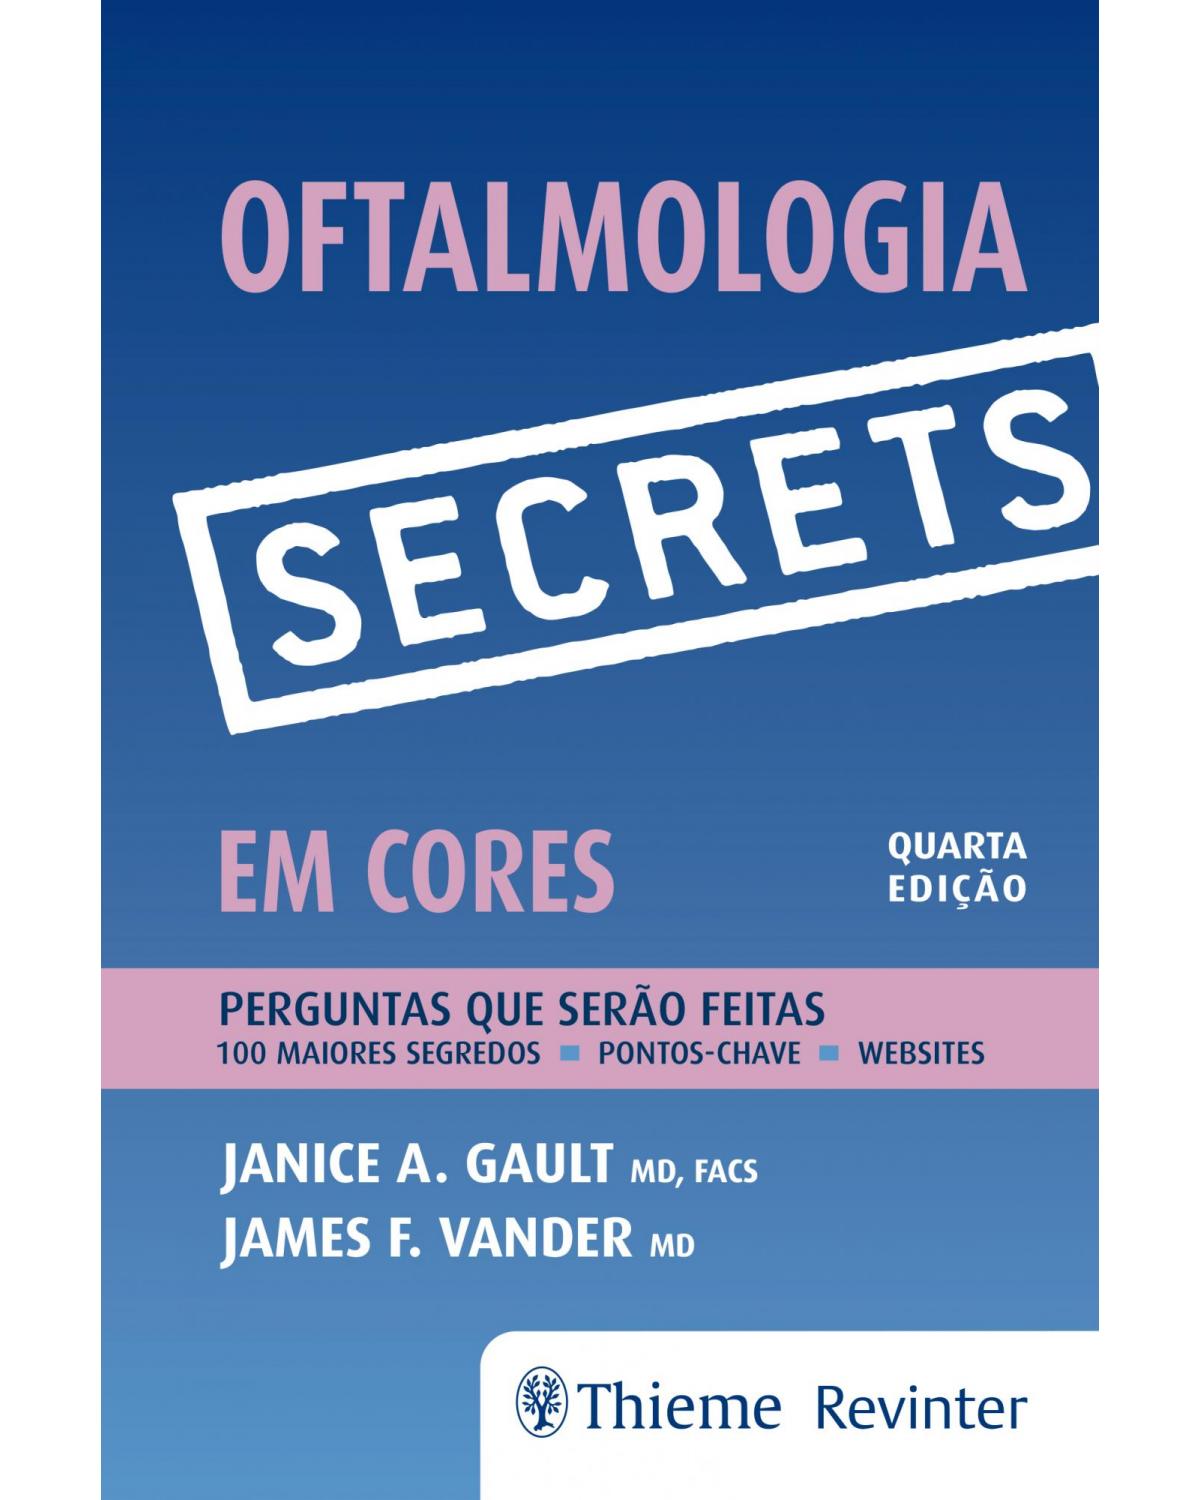 Secrets - Oftalmologia em Cores - Perguntas e Respostas - 4ª Edição | 2018